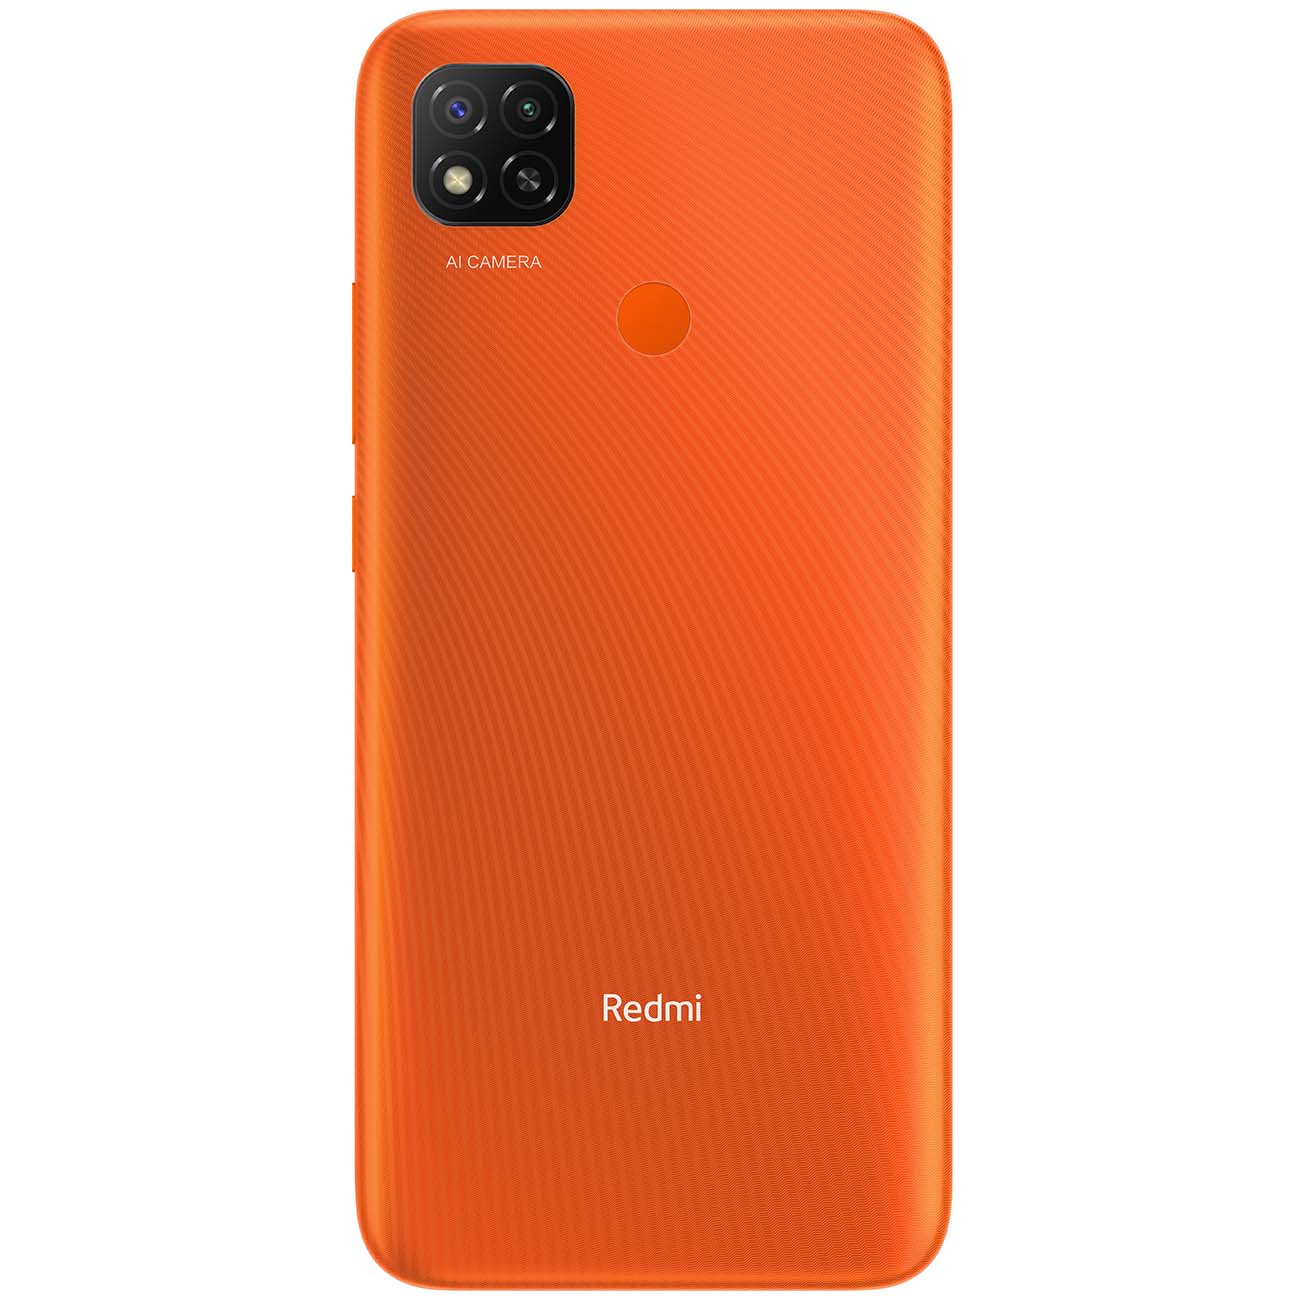 Купить смартфон xiaomi redmi 9c nfc 2+32gb sunrise orange Смартфоны в официальном магазине Apple, Samsung, Xiaomi. iPixel.ru Купить, заказ, кредит, рассрочка, отзывы,  характеристики, цена,  фотографии, в подарок.